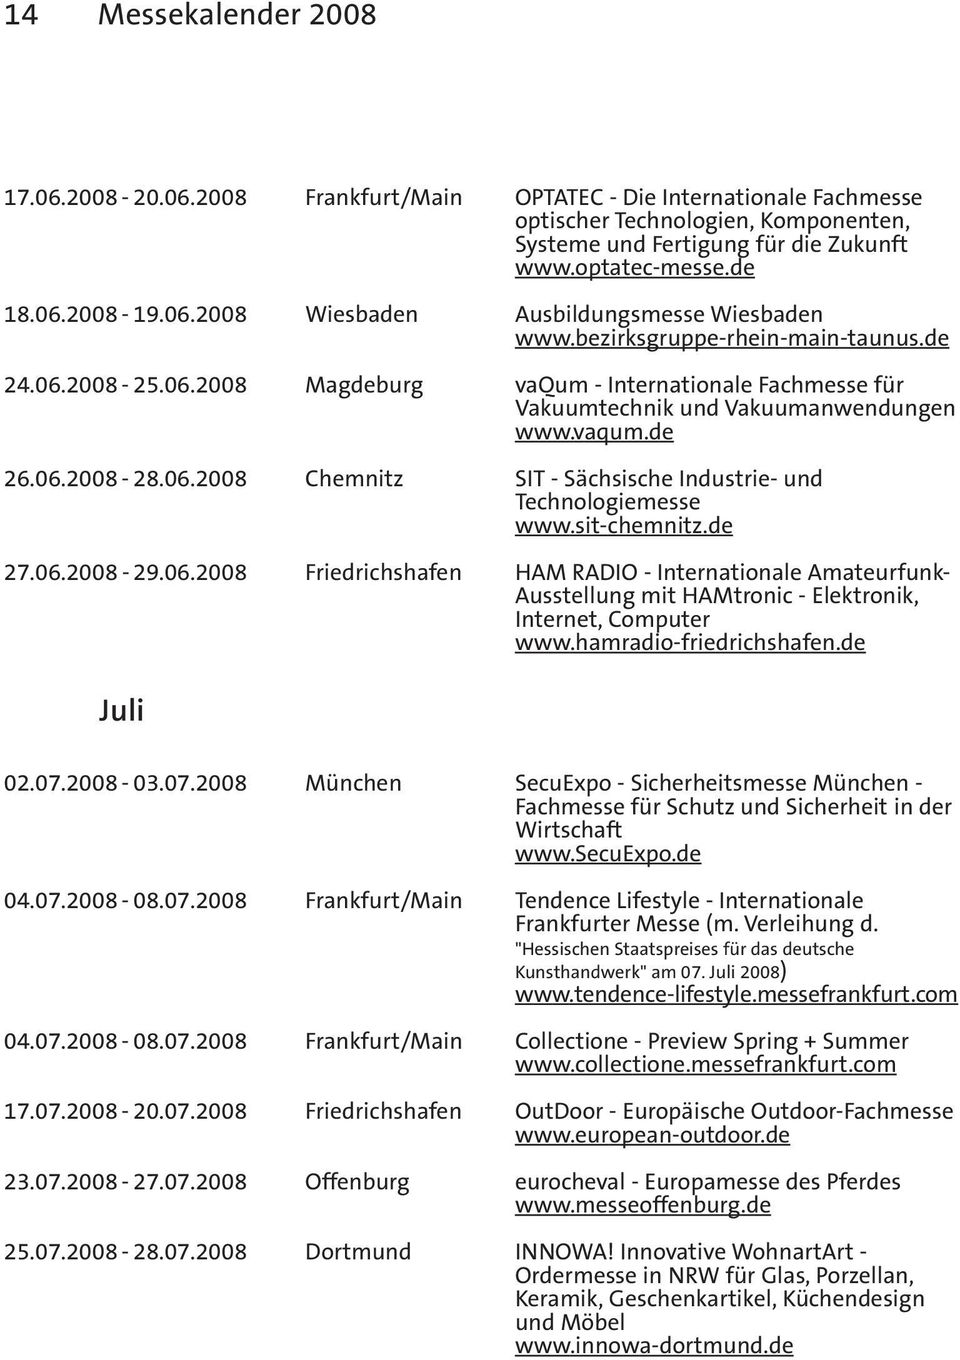 06.2008-28.06.2008 Chemnitz SIT - Sächsische Industrie- und Technologiemesse www.sit-chemnitz.de 27.06.2008-29.06.2008 Friedrichshafen HAM RADIO - Internationale Amateurfunk- Ausstellung mit HAMtronic - Elektronik, Internet, Computer www.